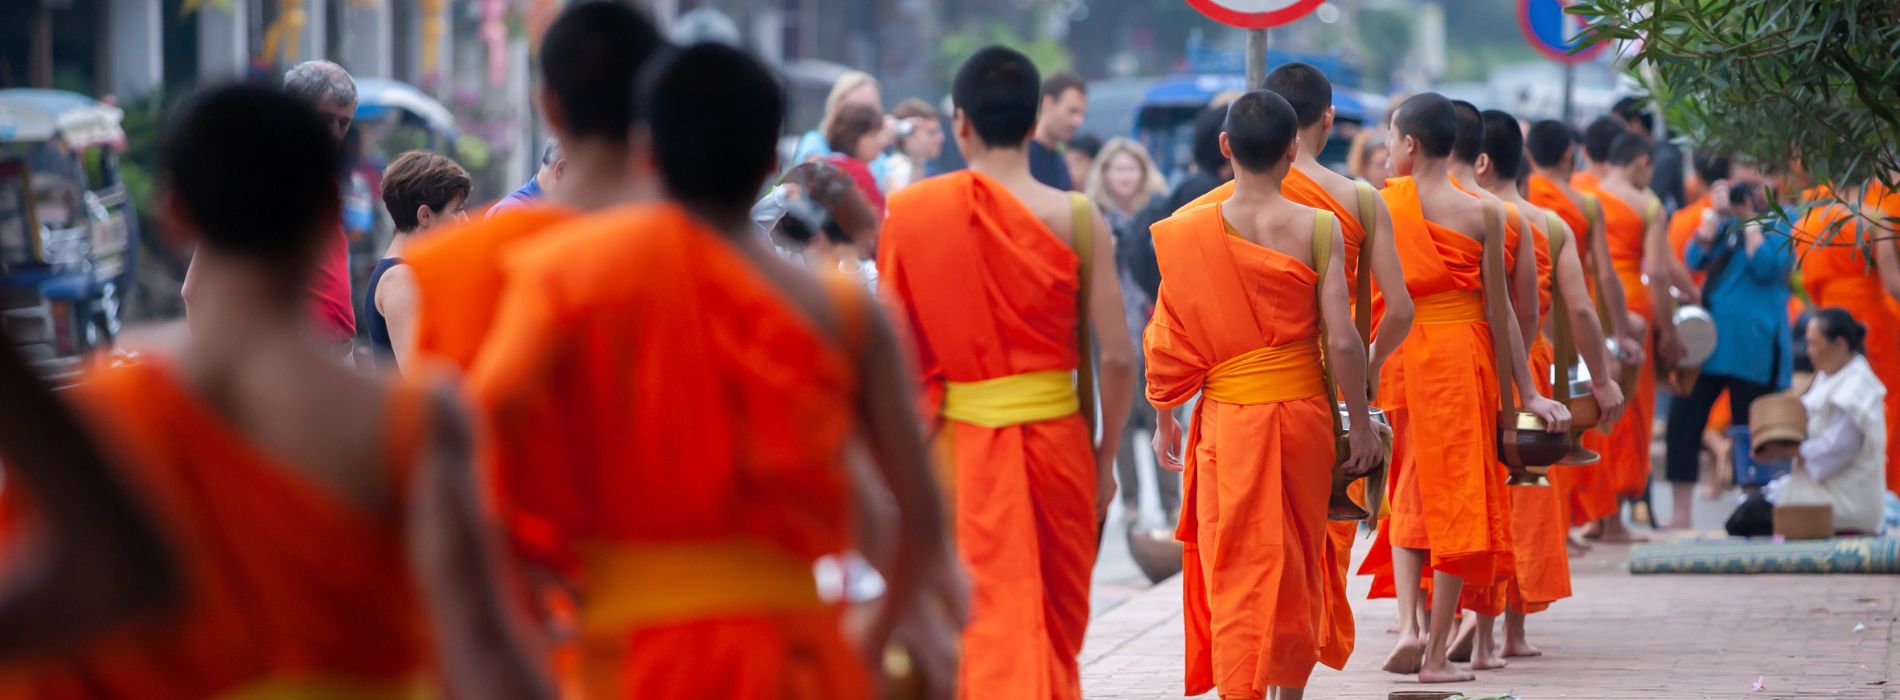 Pourquoi les moines bouddhistes ont le bras droit découvert ?